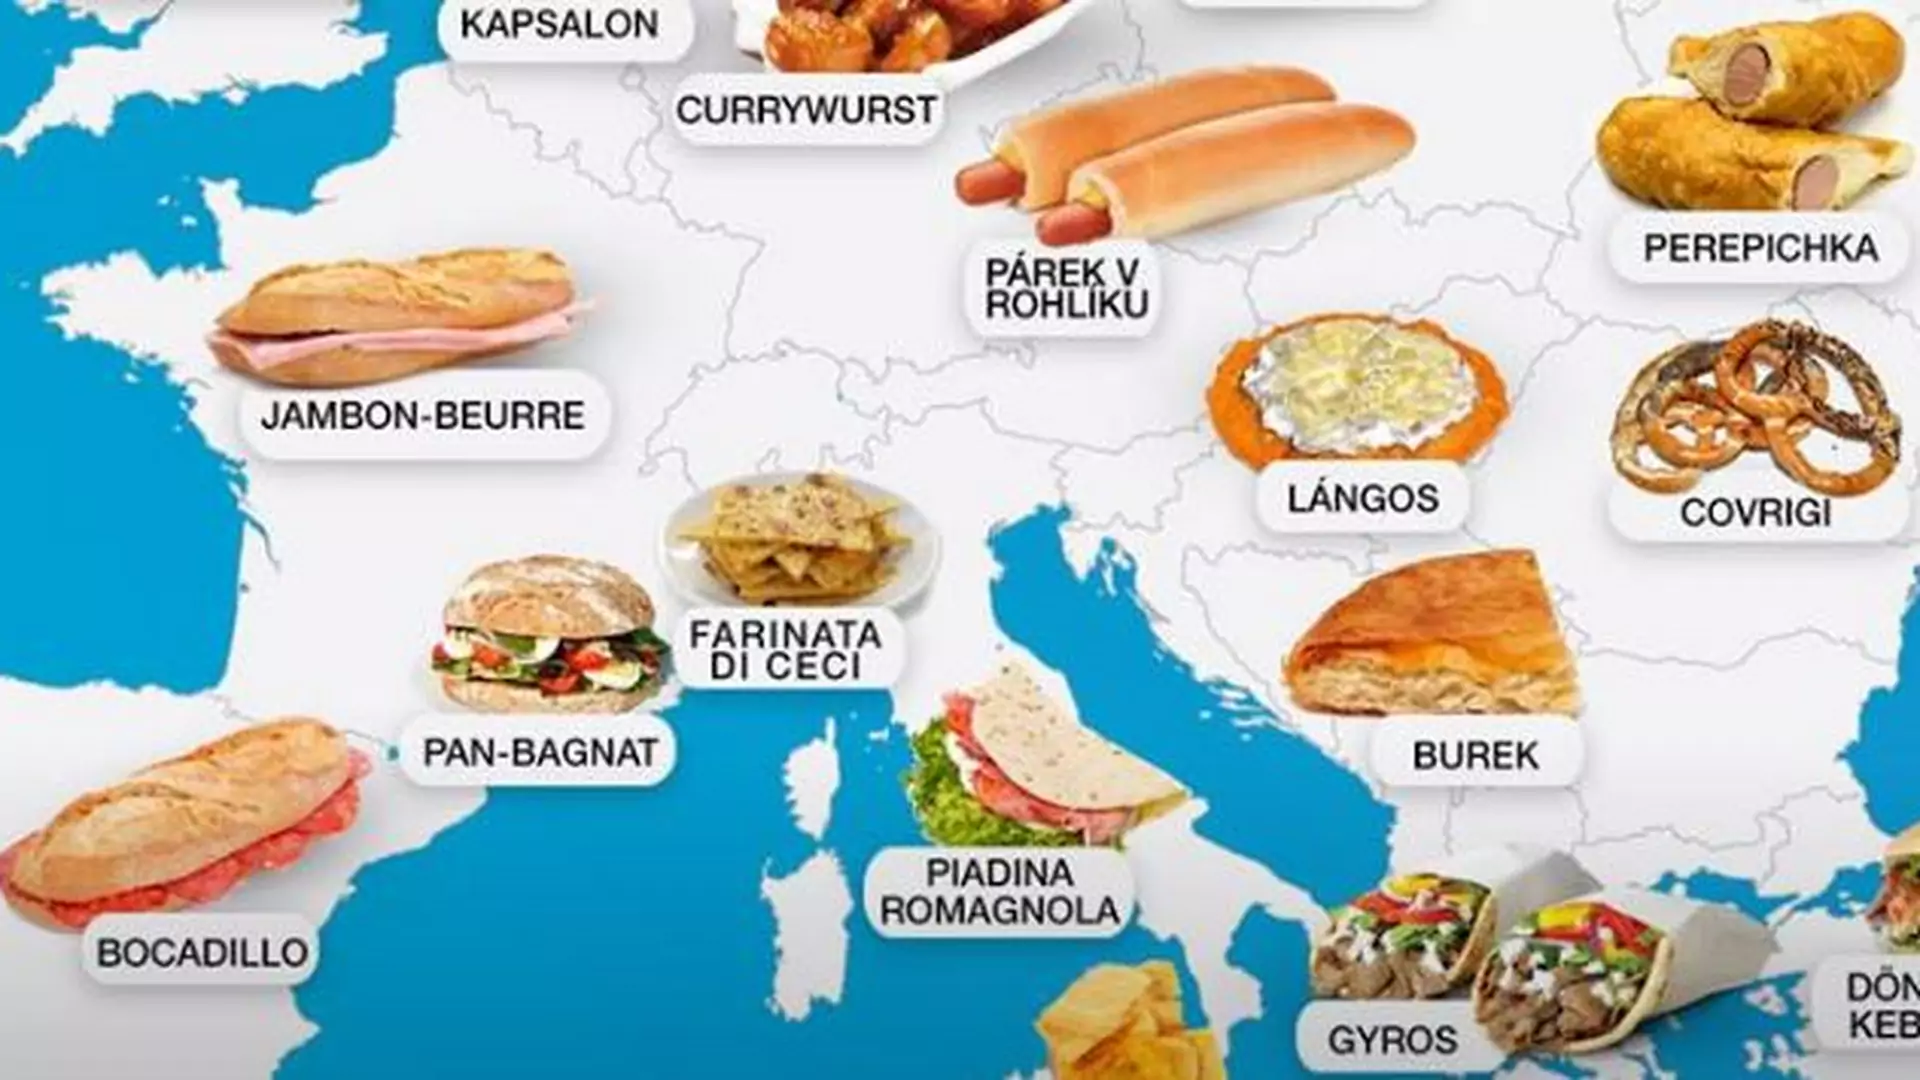 Powstała kulinarna mapa świata. Z jakimi przysmakami kojarzy się Polska?